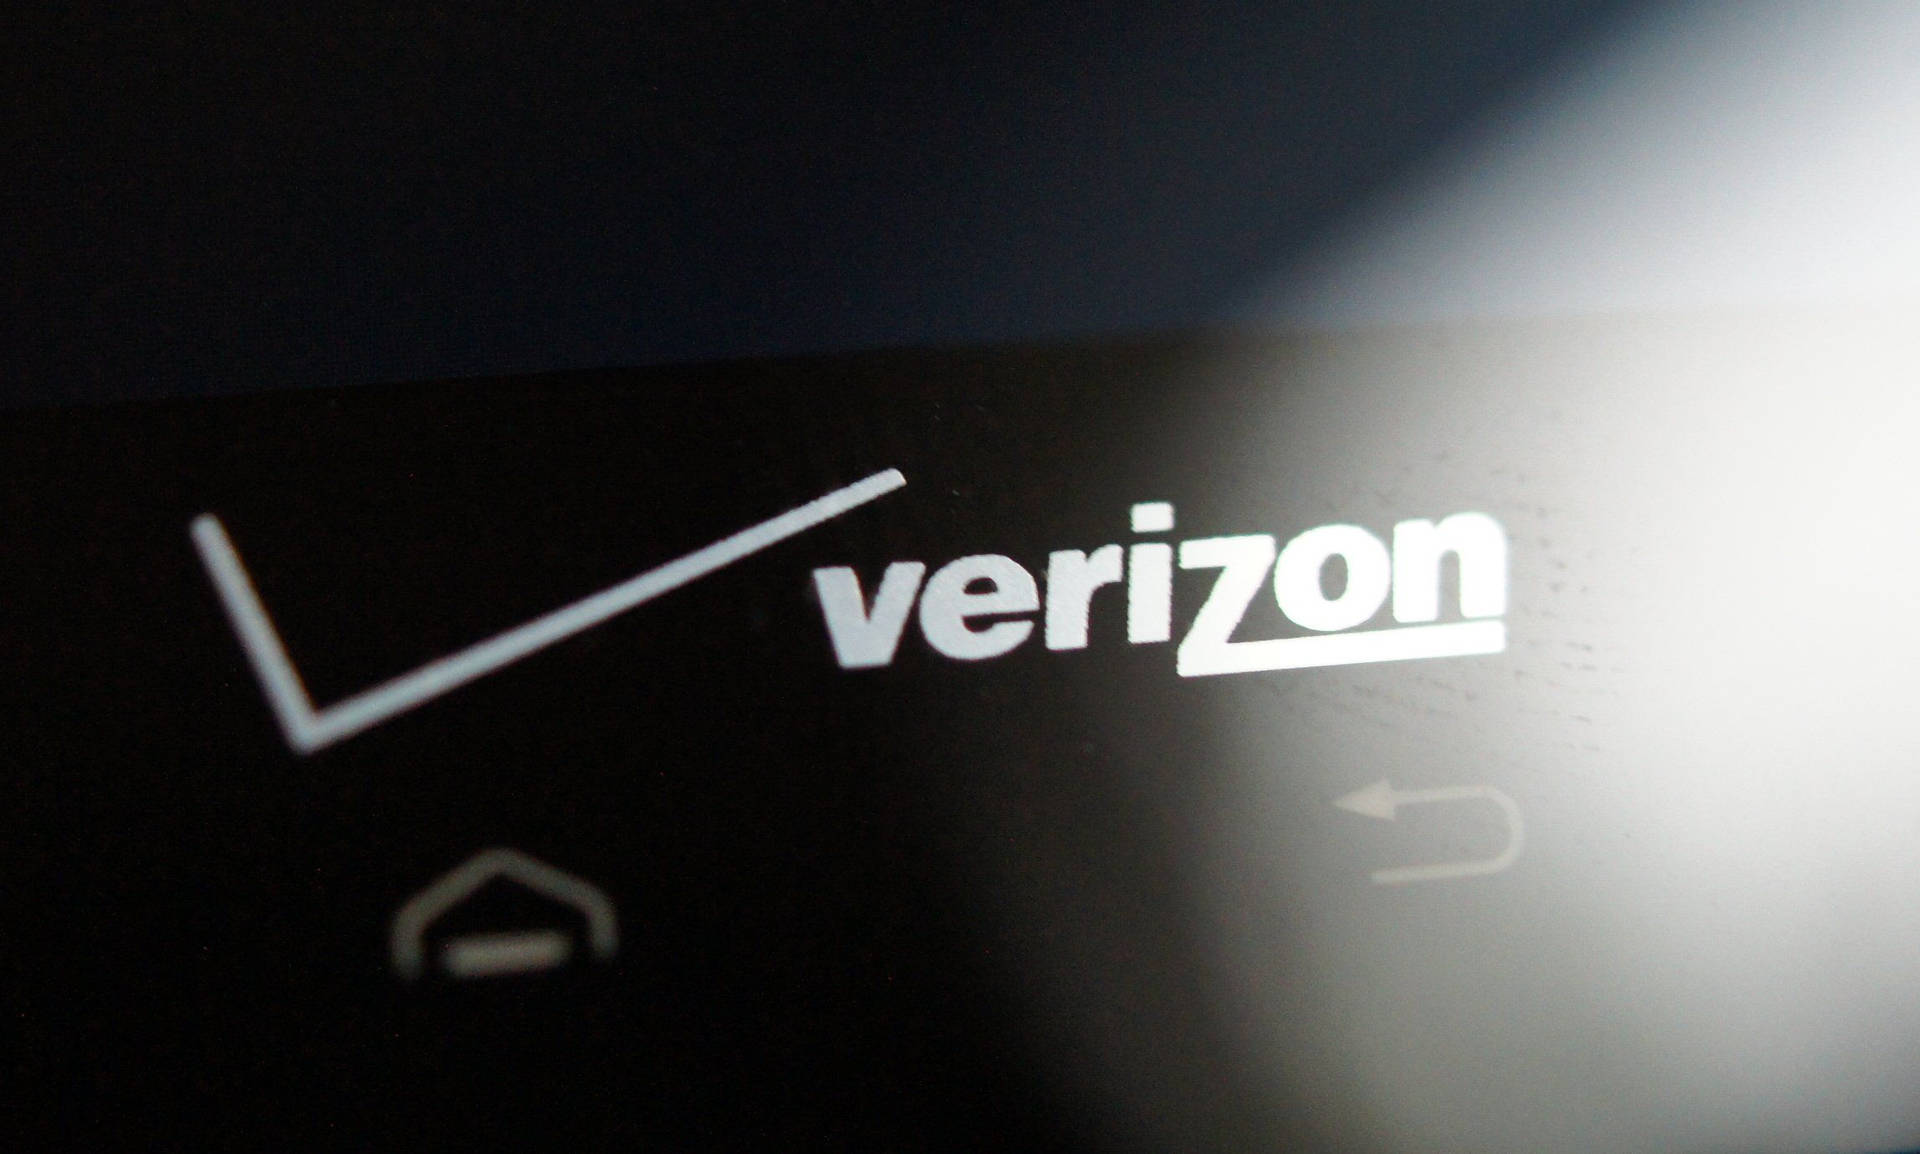 Verizon Mobile Logo